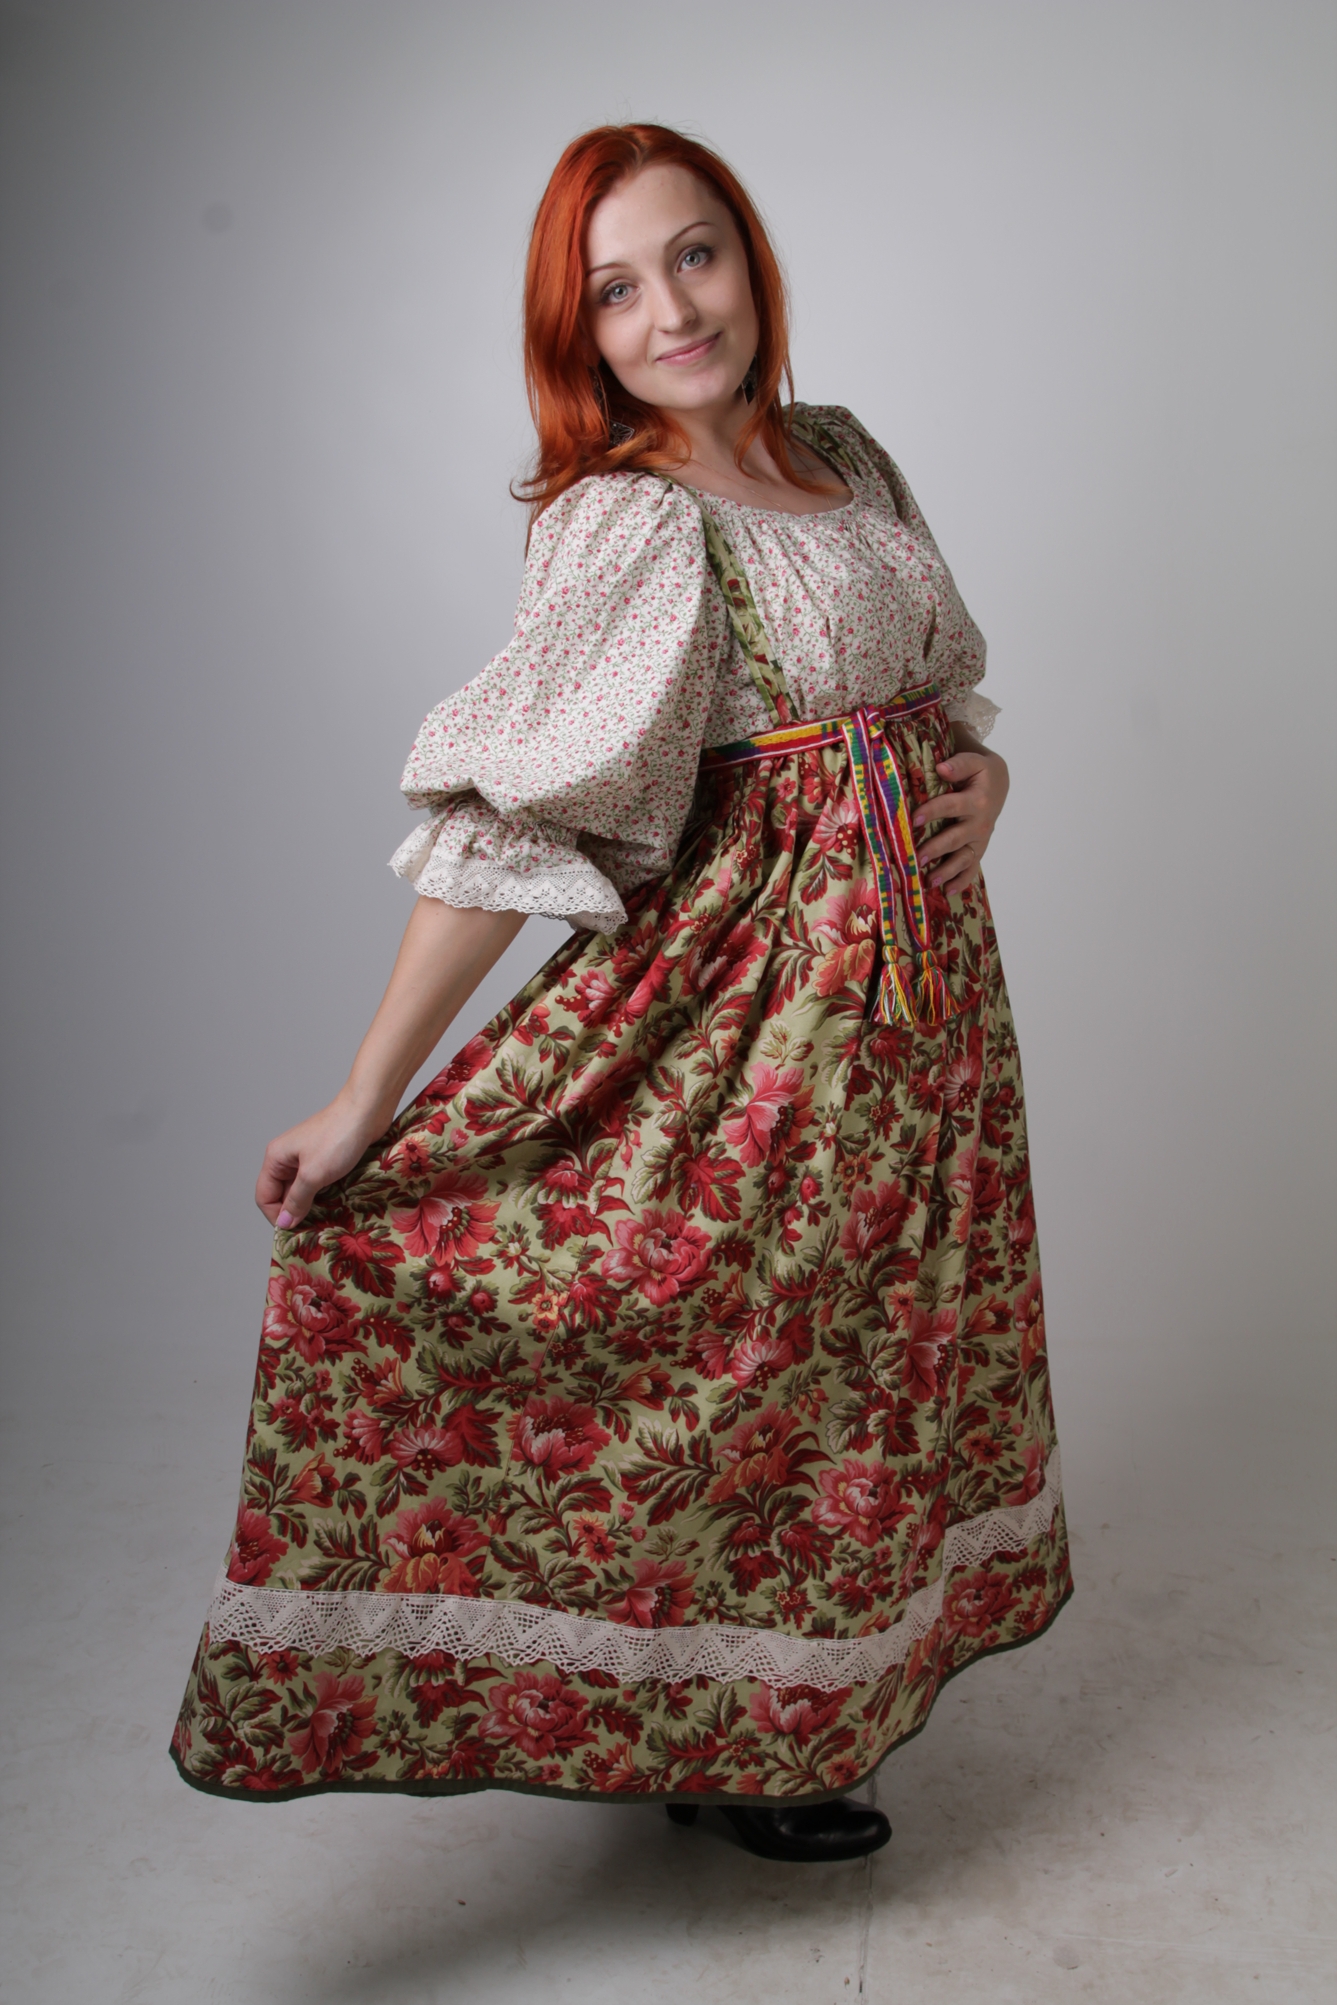 Уральский народный костюм из Сухого Лога